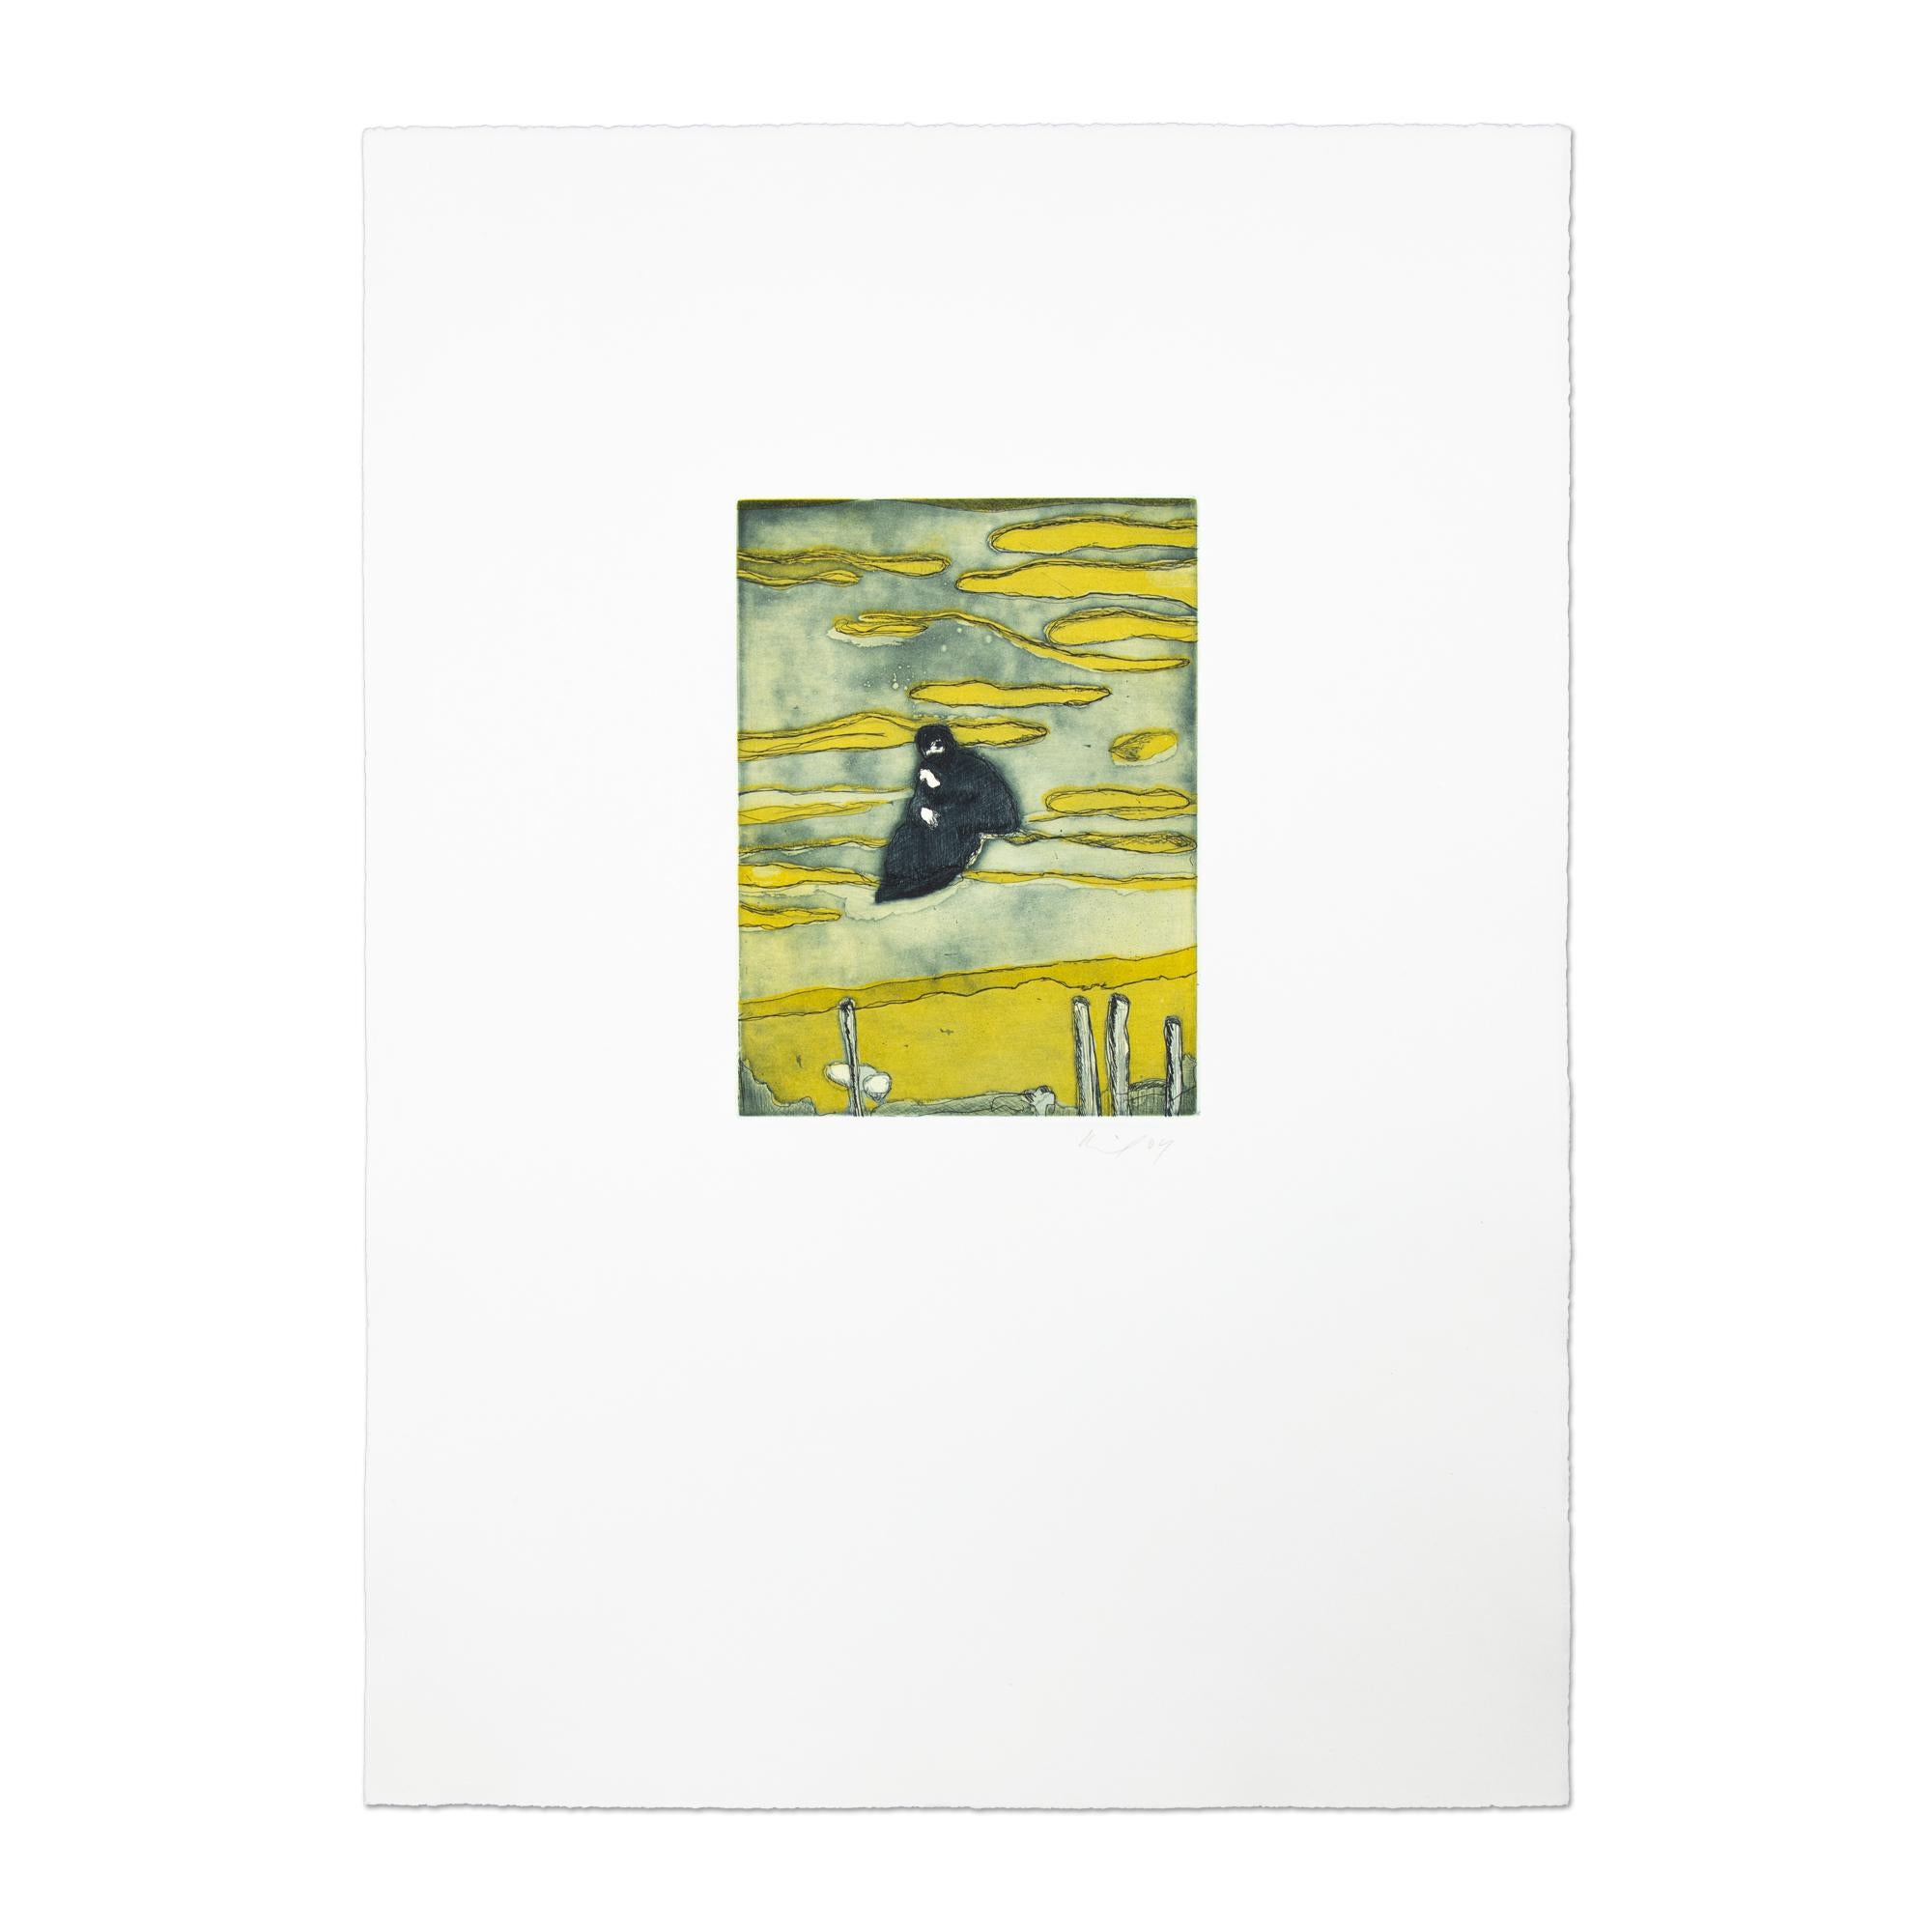 Peter Doig (né en 1959 à Édimbourg)
Hangar à bateaux (extrait de Black Palms), 2004
Support : Gravure en couleurs, sur papier vélin
Moyen : 53,5 × 38 cm (21 1/10 × 15 in)
Signature : Signé à la main et daté au crayon
Condit : Excellent